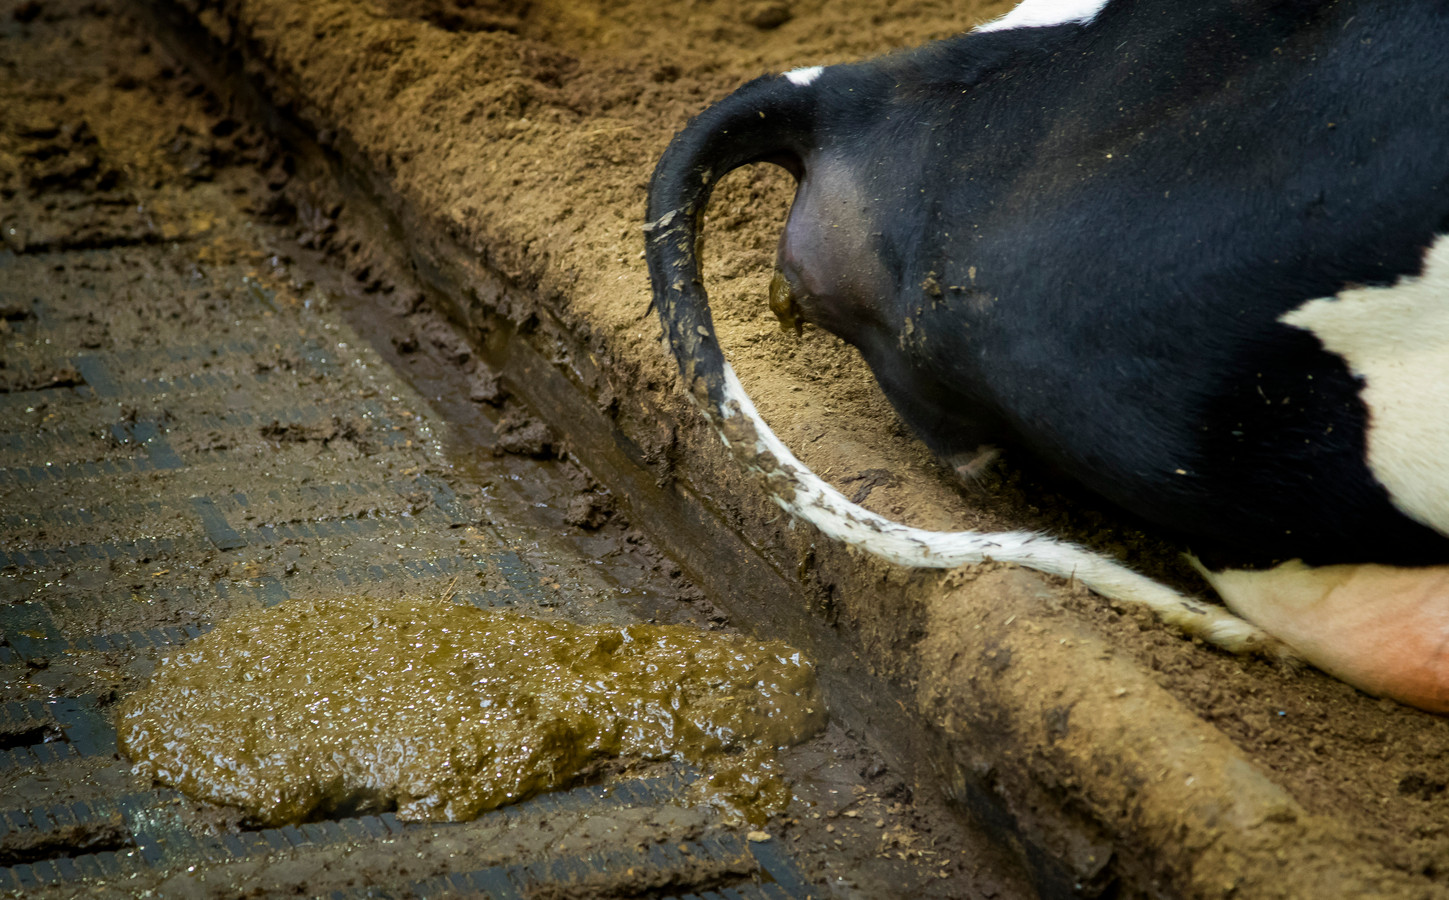 Mest van een koe in de stal van een melkveehouderij.